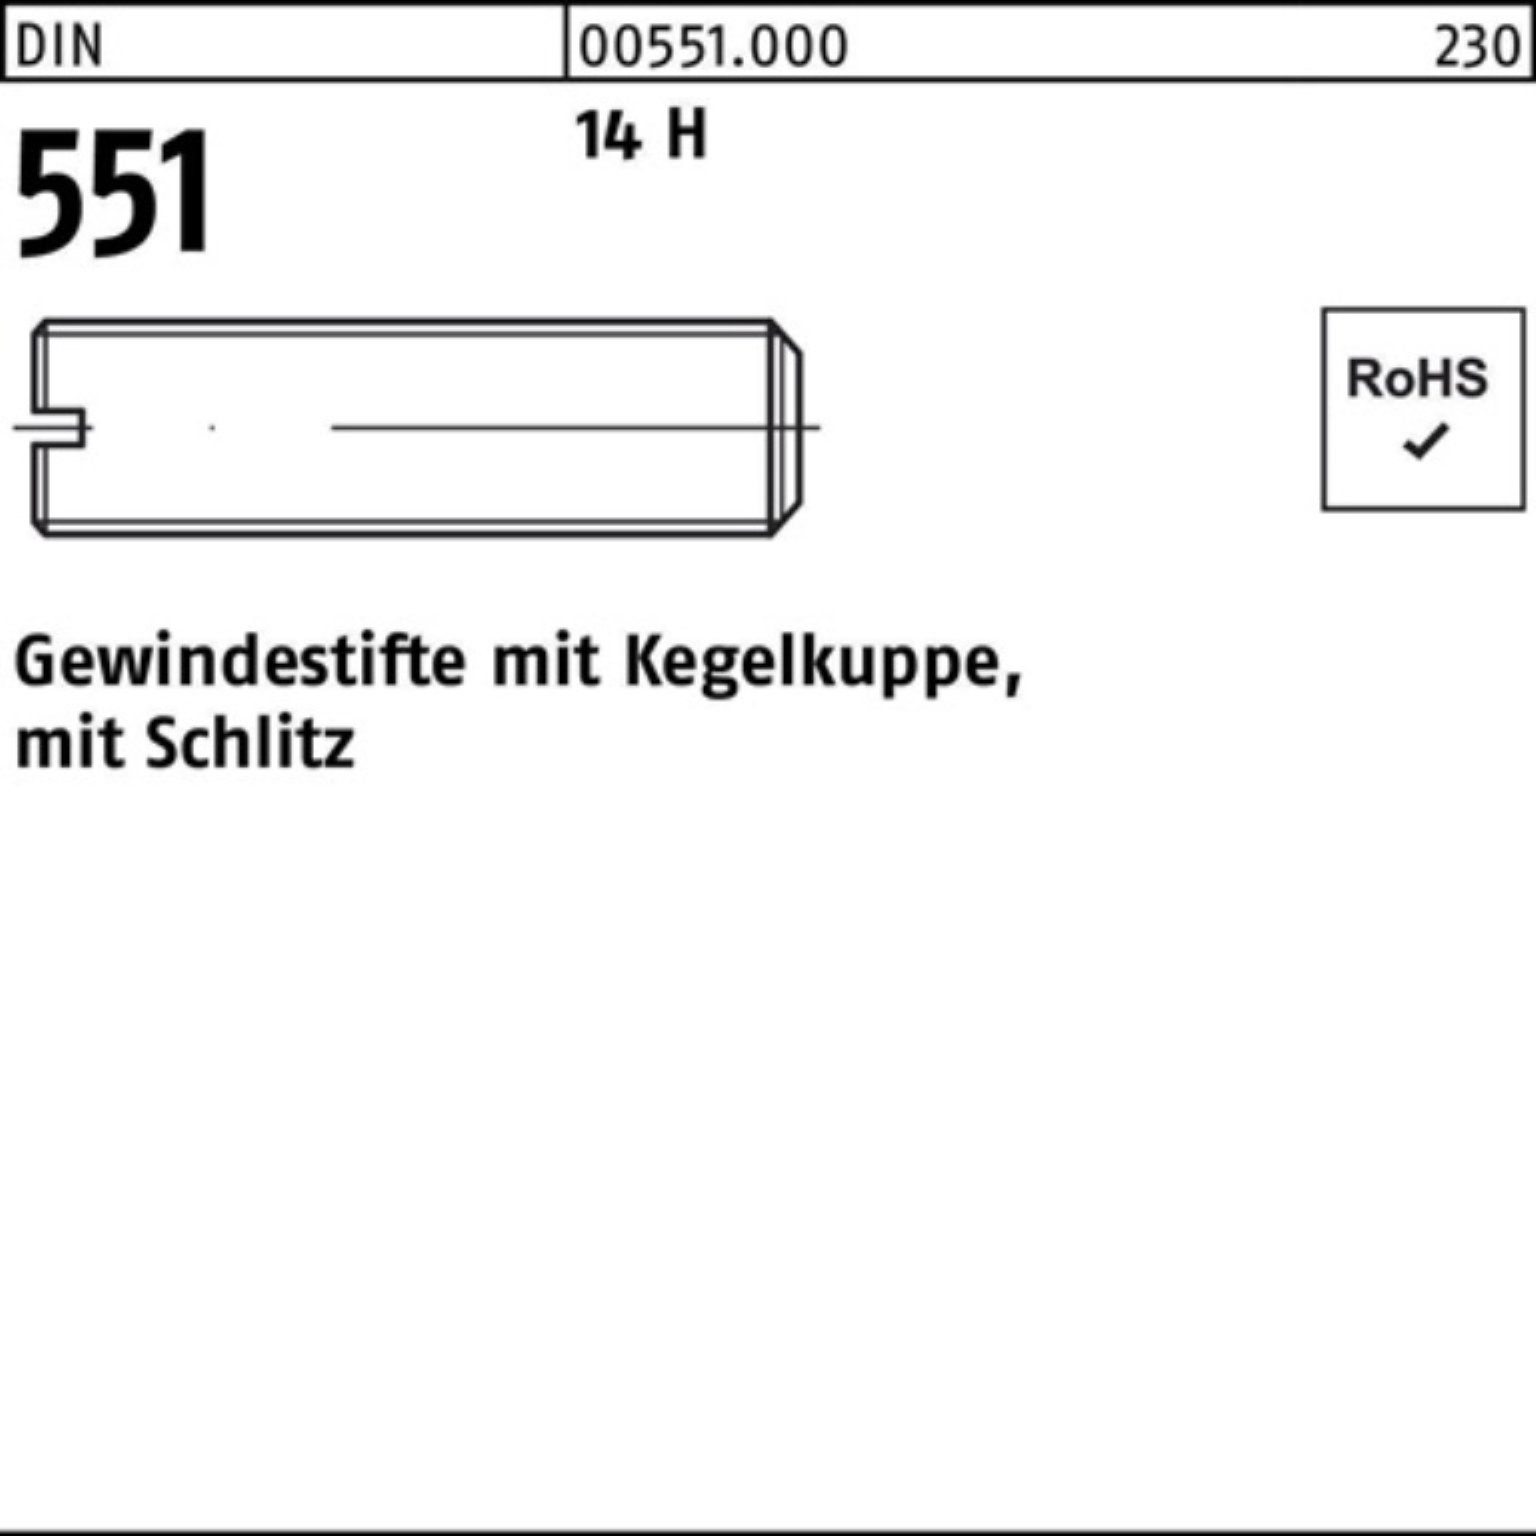 Reyher Gewindebolzen 100er Pack Gewindestift DIN 551 Kegelkuppe/Schlitz M1,6x 2 14 H 100 St